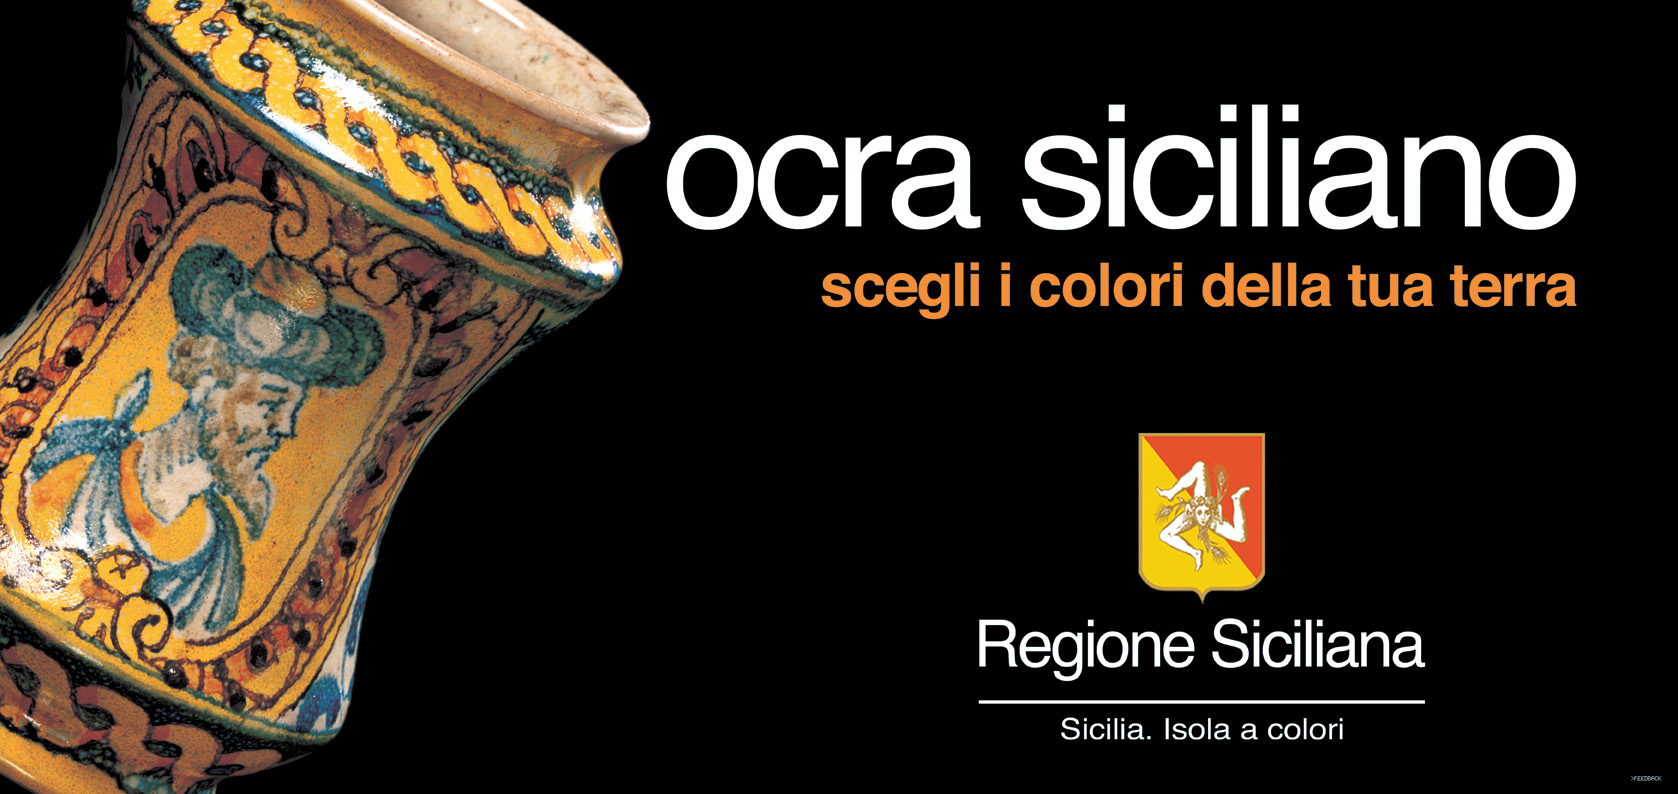 "Sicilia, isola a colori " vince tourism award